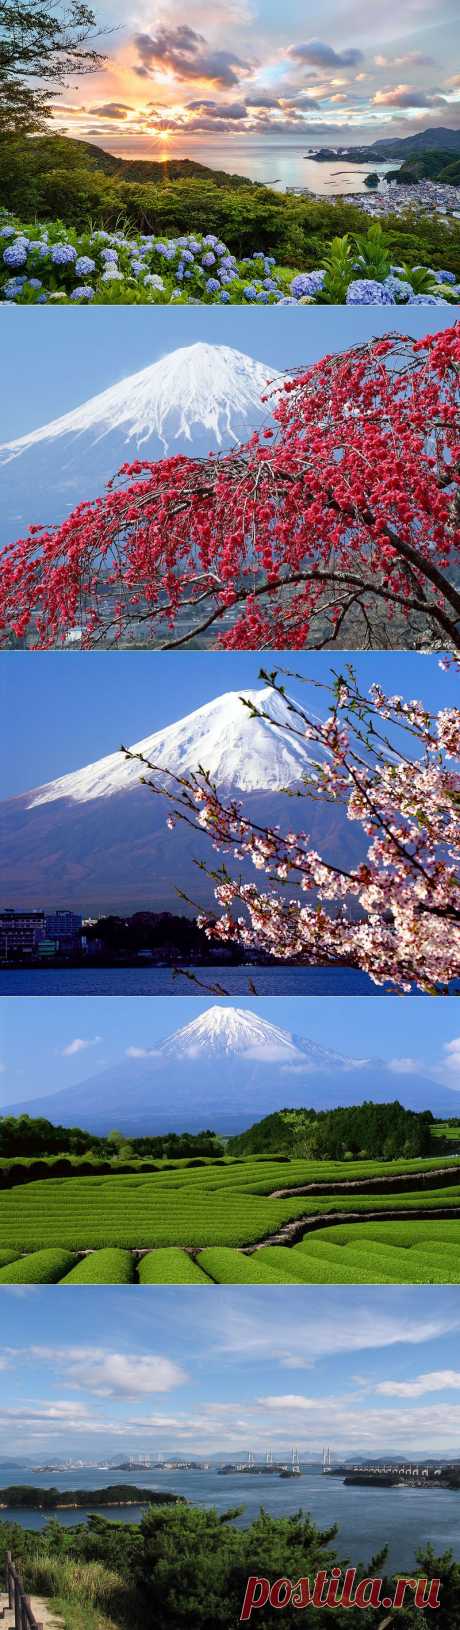 Япония - страна, сочетающая традиции и современность. Часть 1..